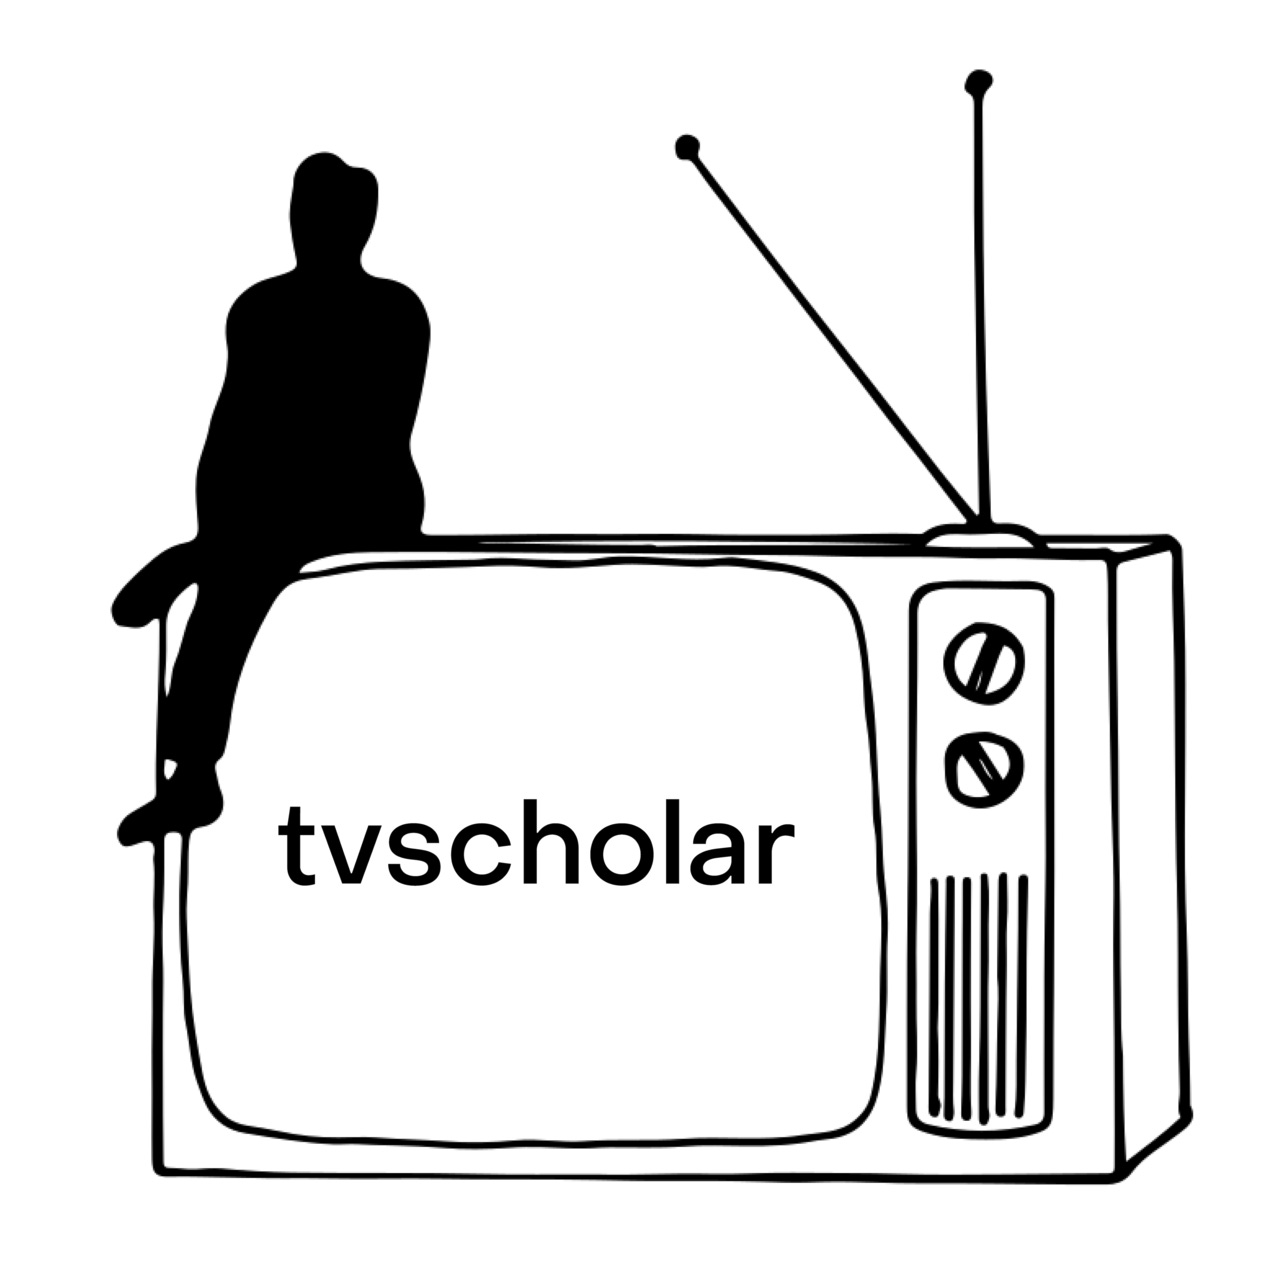 Artwork for the tv scholar newsletter